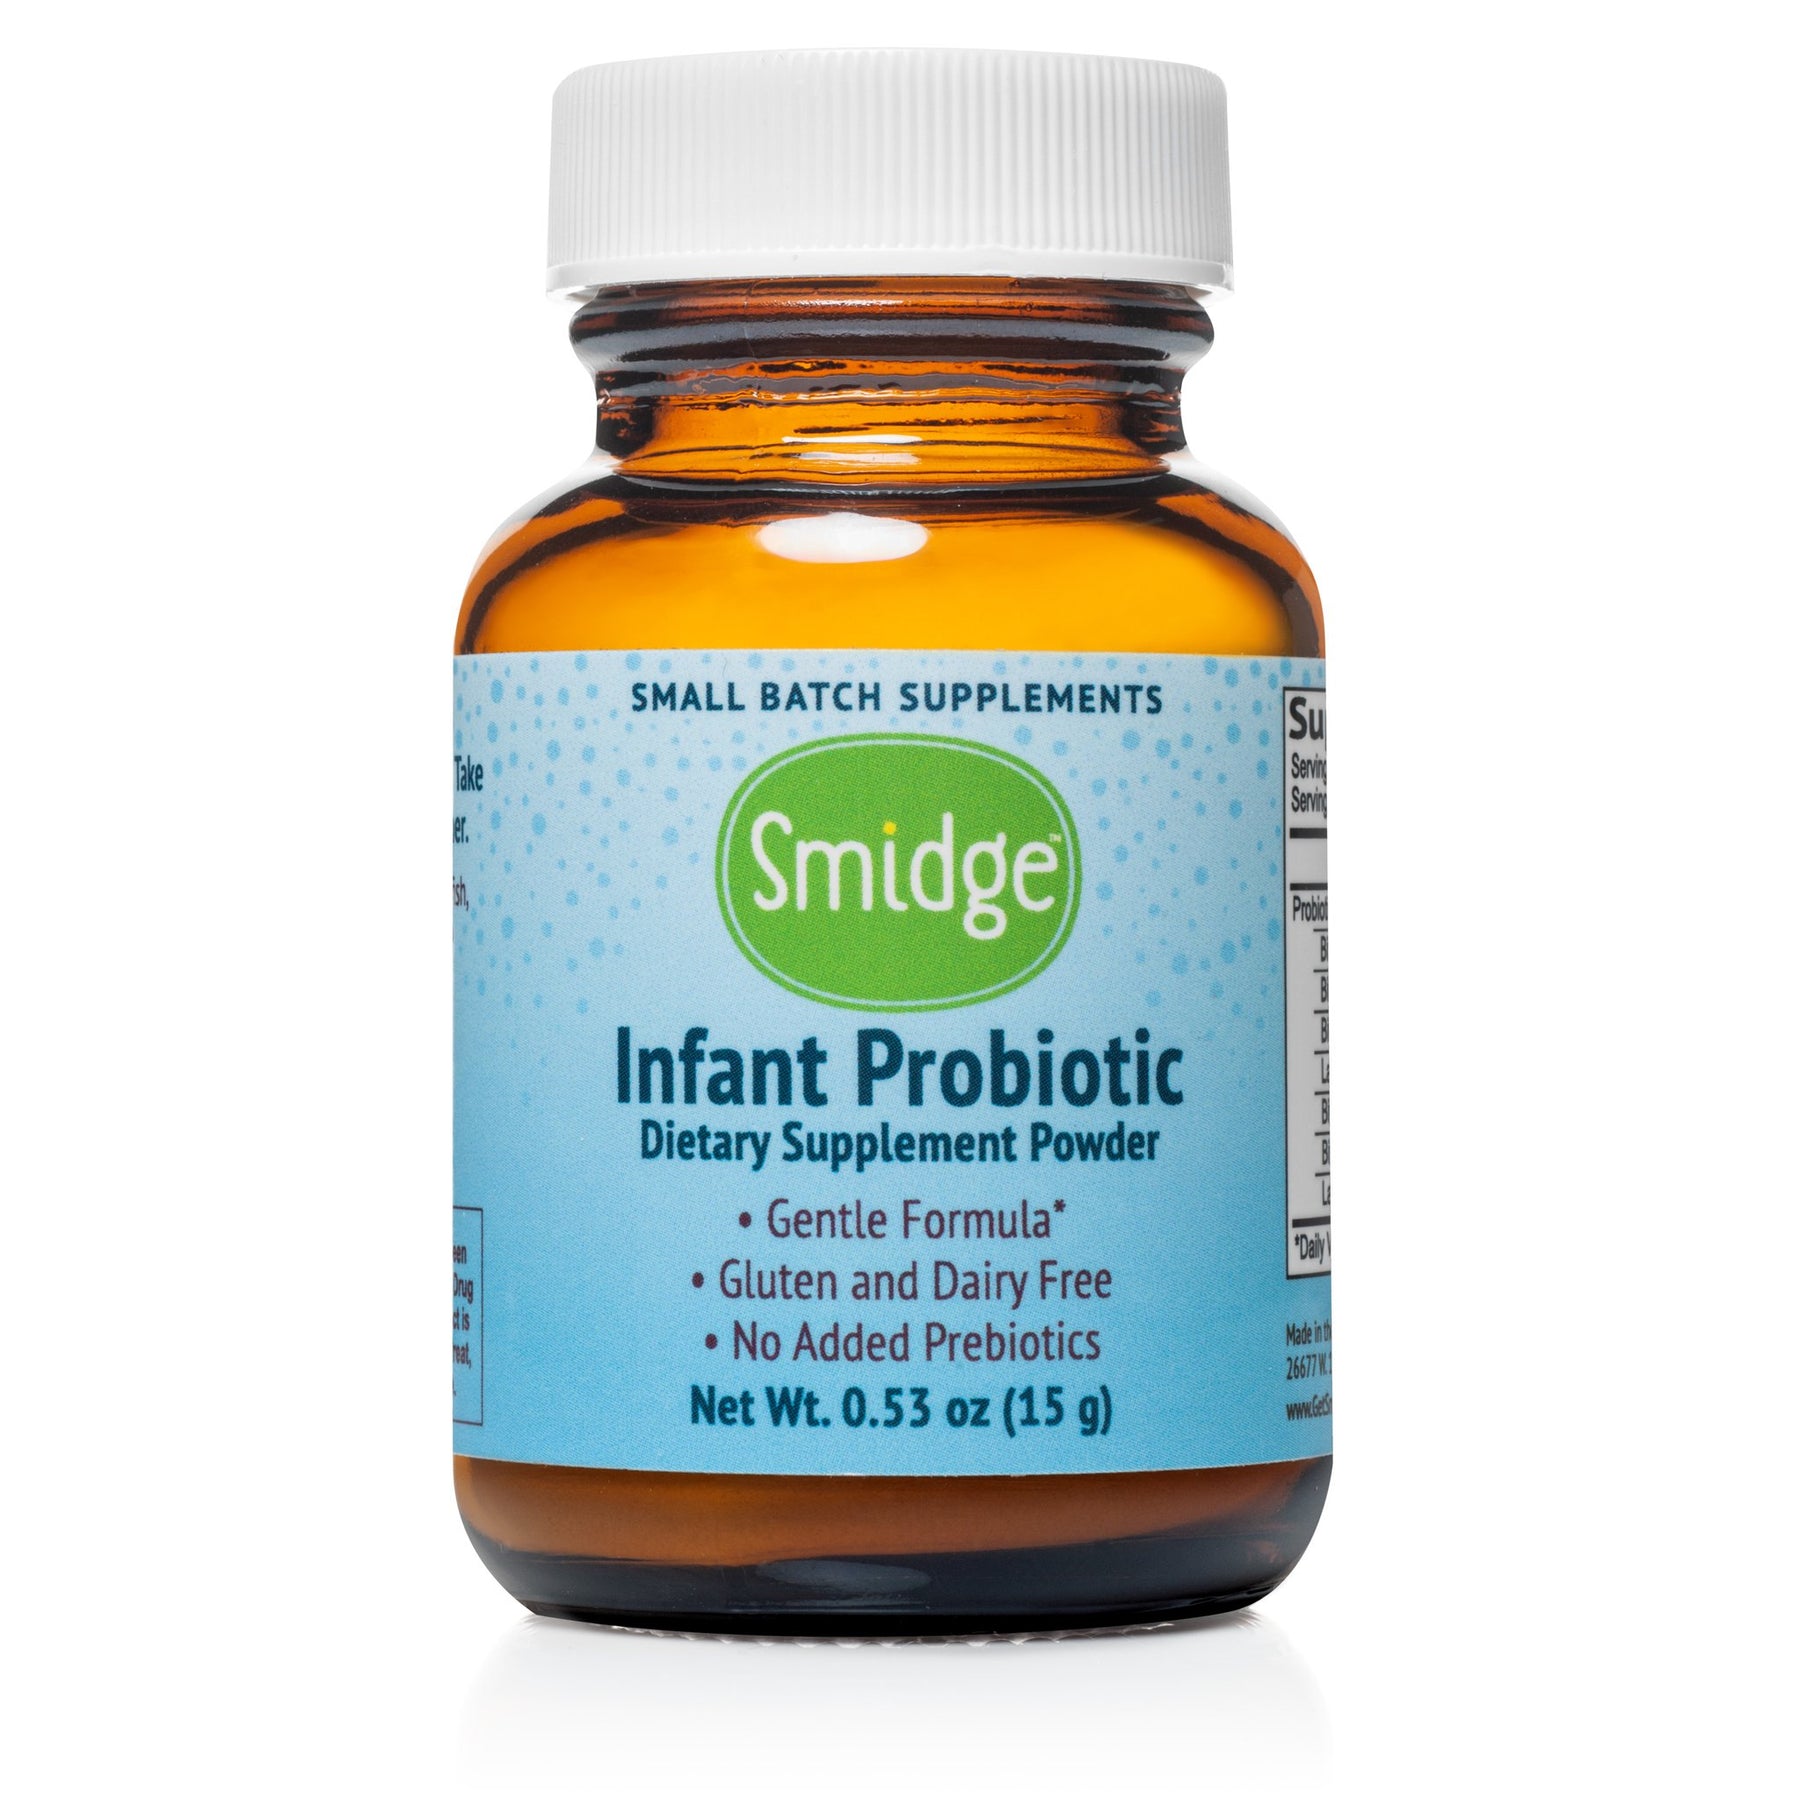 Smidge Infant Probiotic